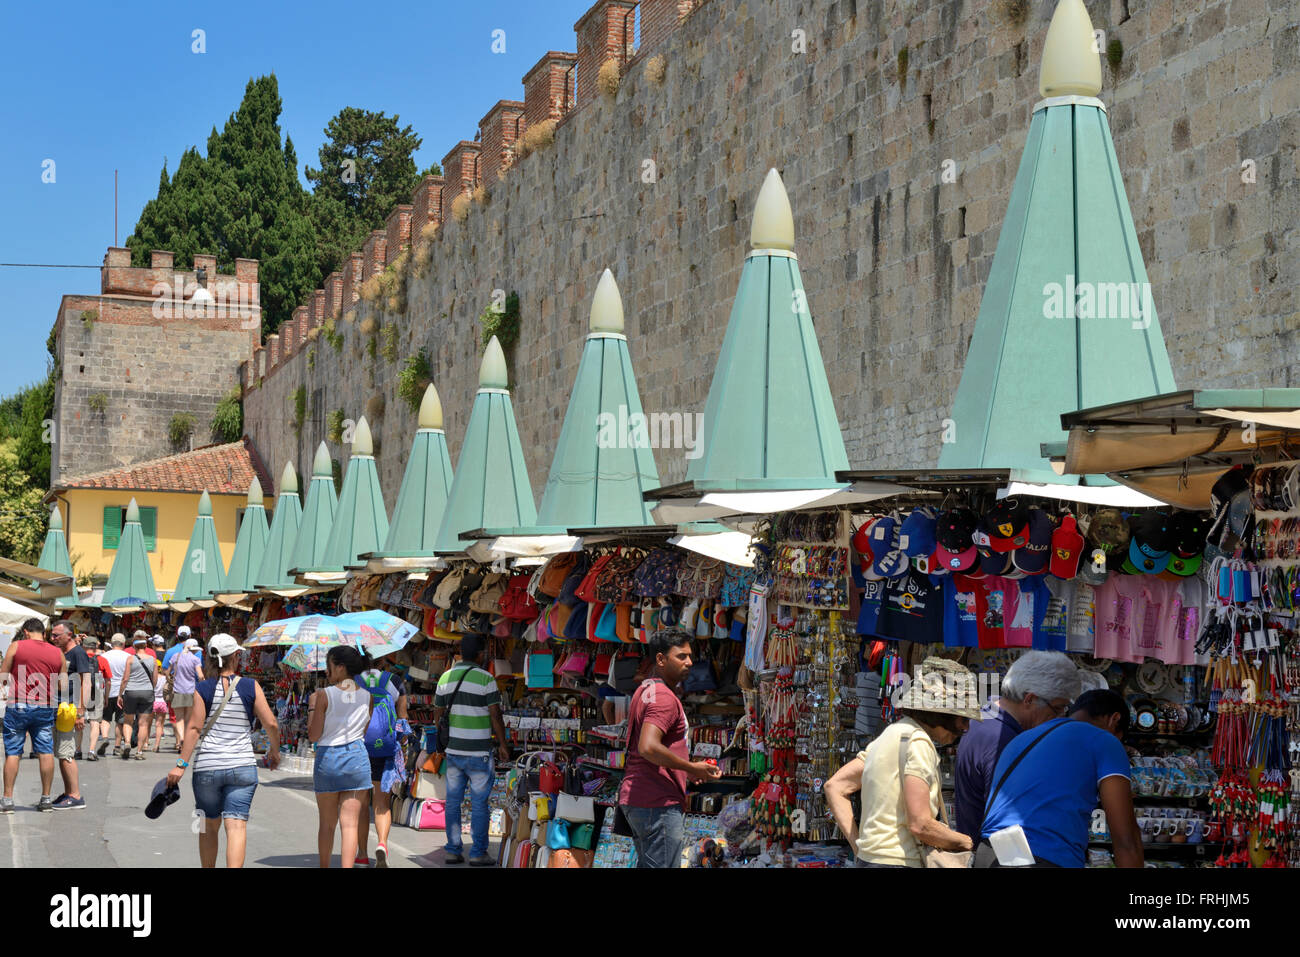 Market stalls beneath the city walls, Via Giosuè Carducci,,Pisa, Toscana, Tuscany, Italy, Europe Stock Photo